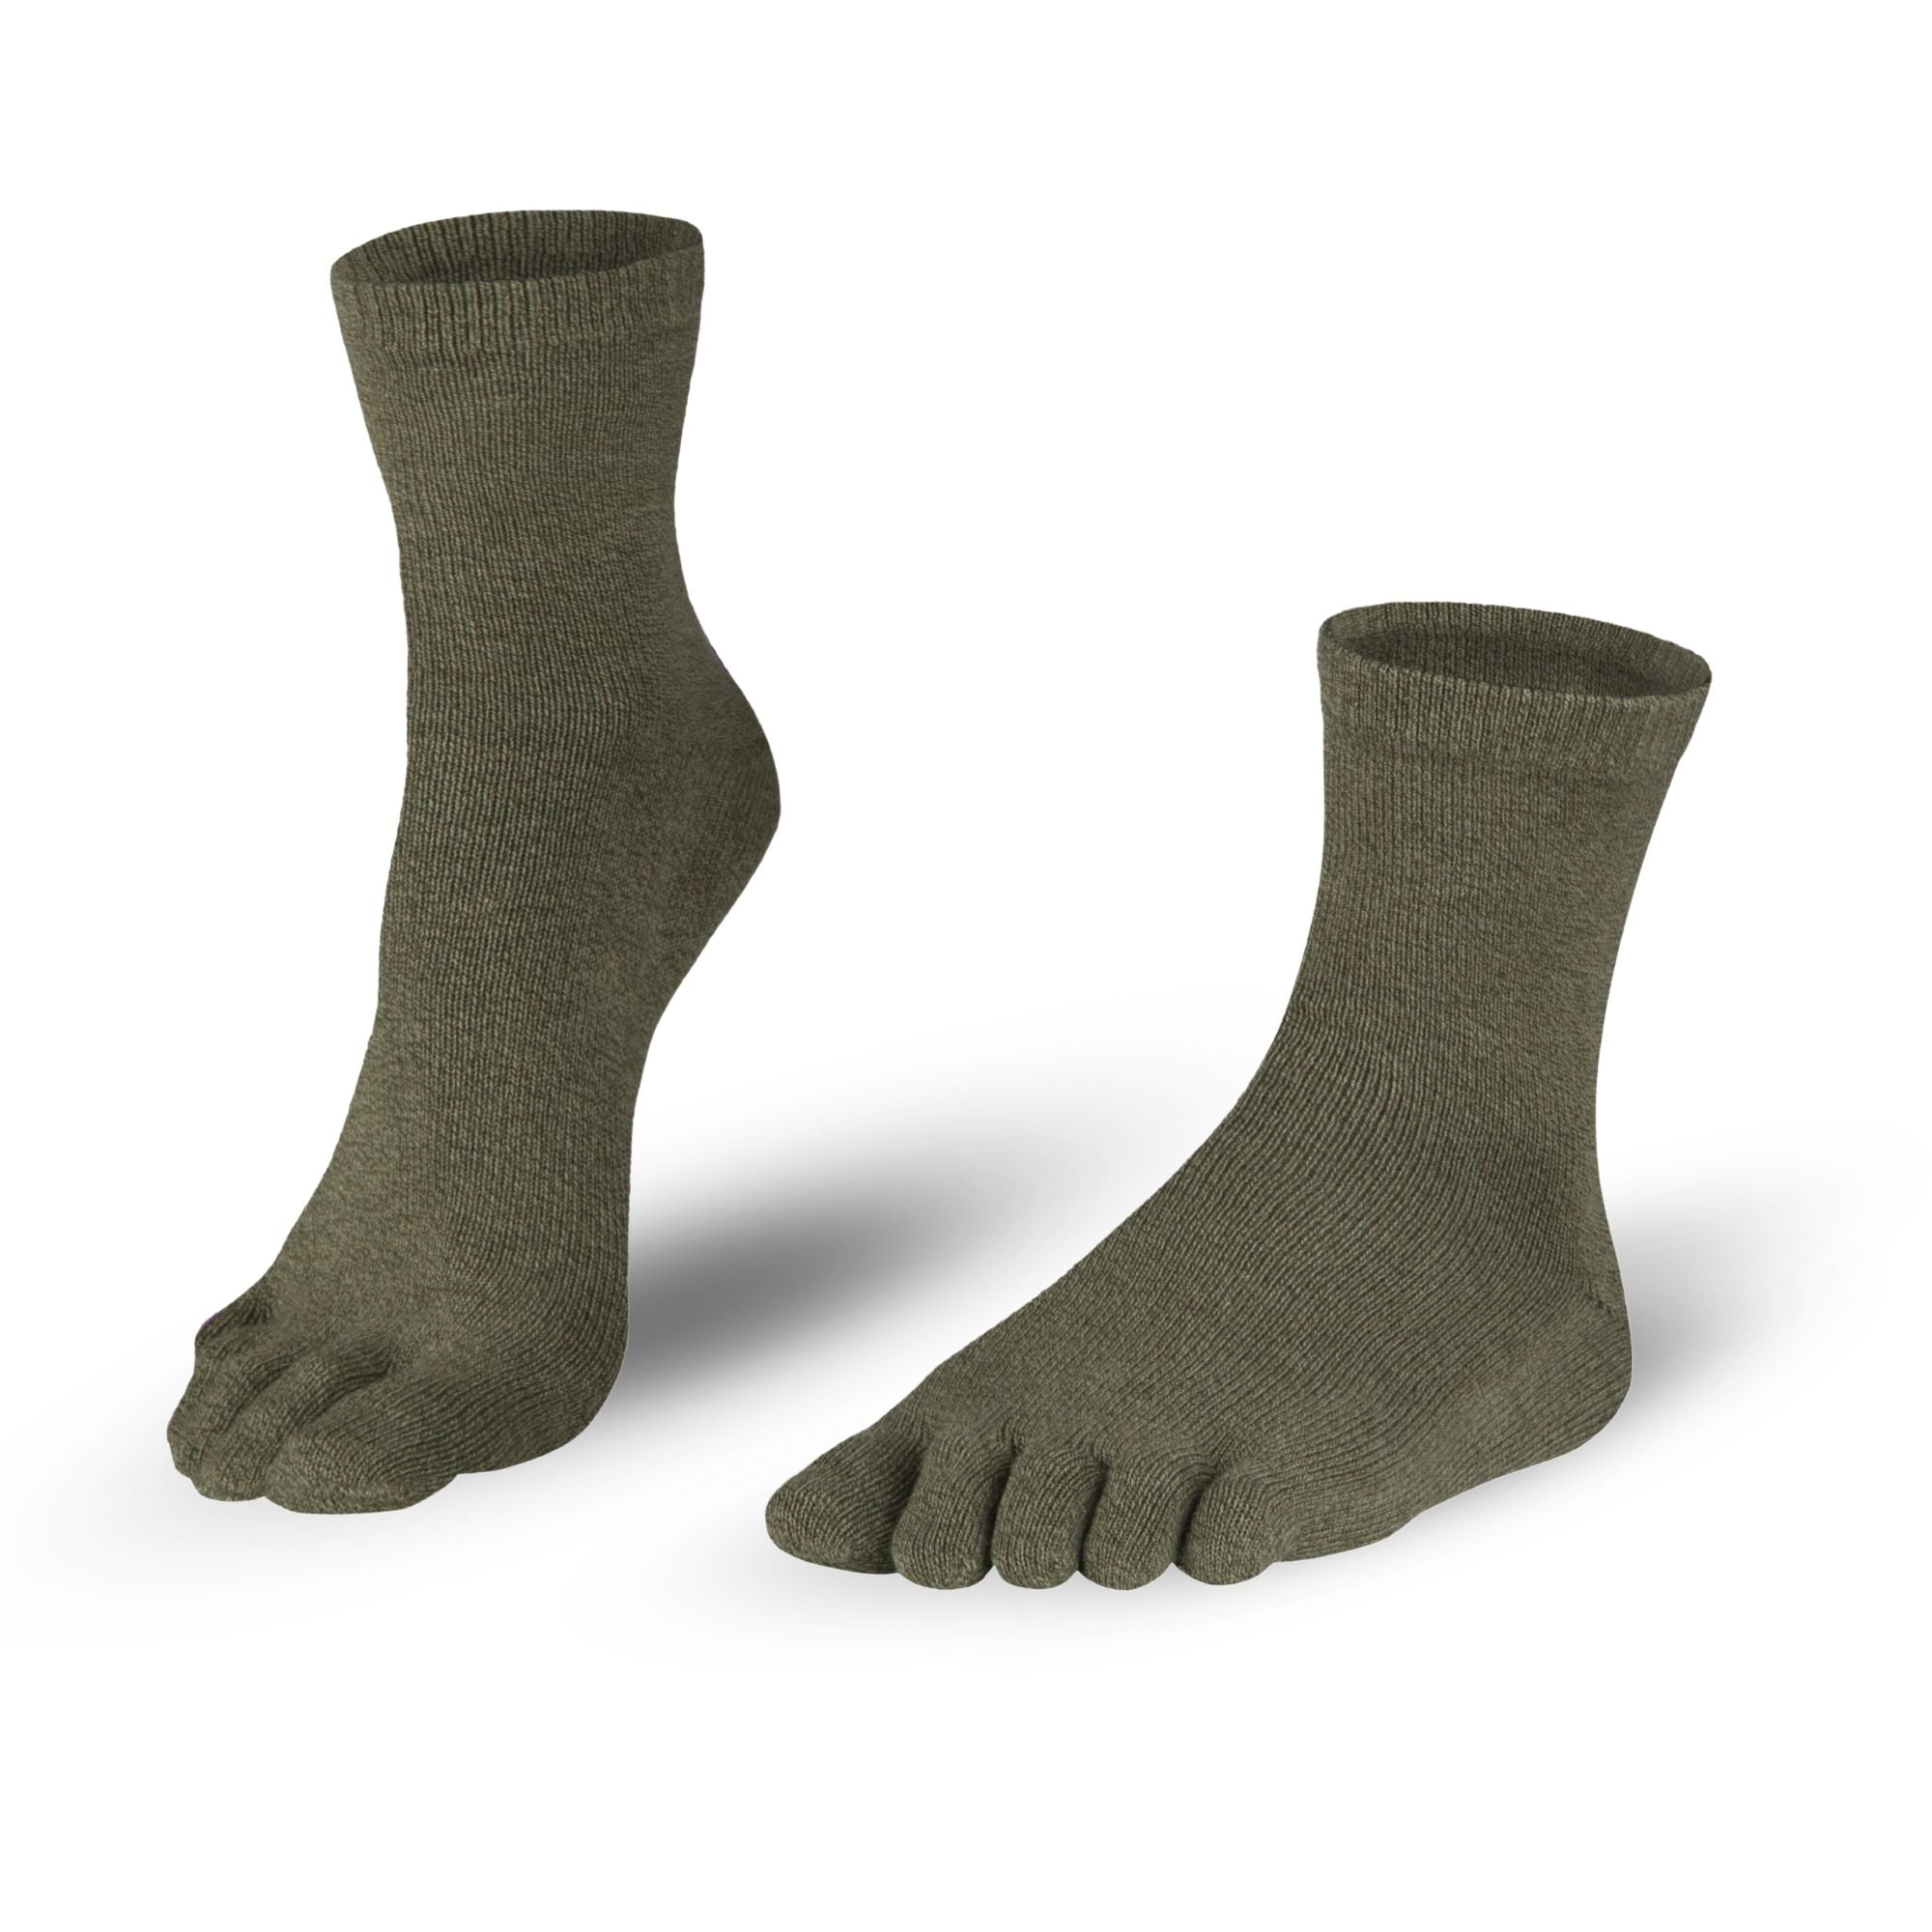 Baumwoll-Zehensocken Söckchen in graugrün für Damen und Herren